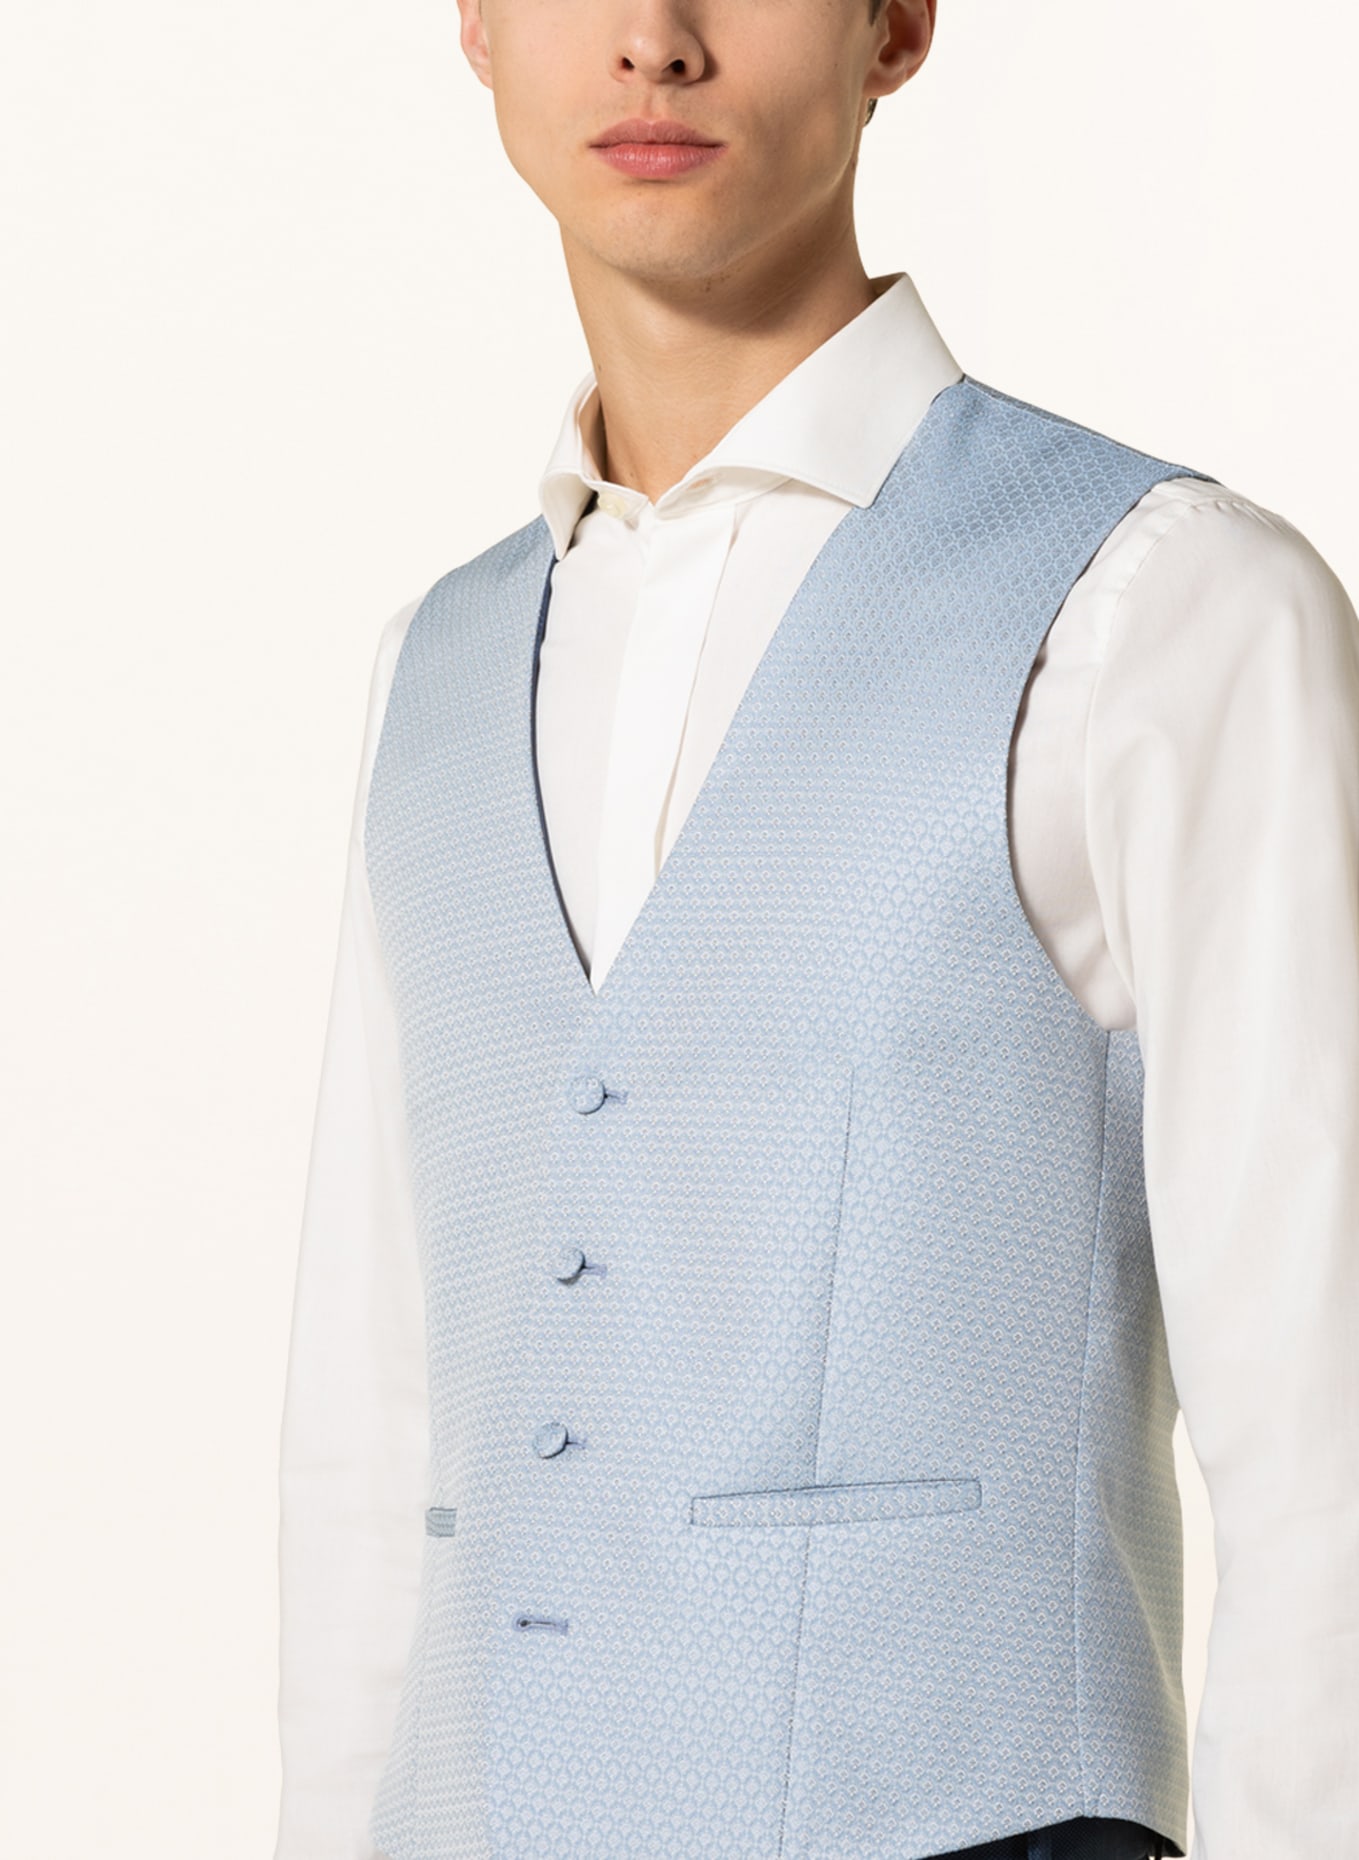 WILVORST Suit vest extra slim fit, Color: 030 hell Blau gem. (Image 5)